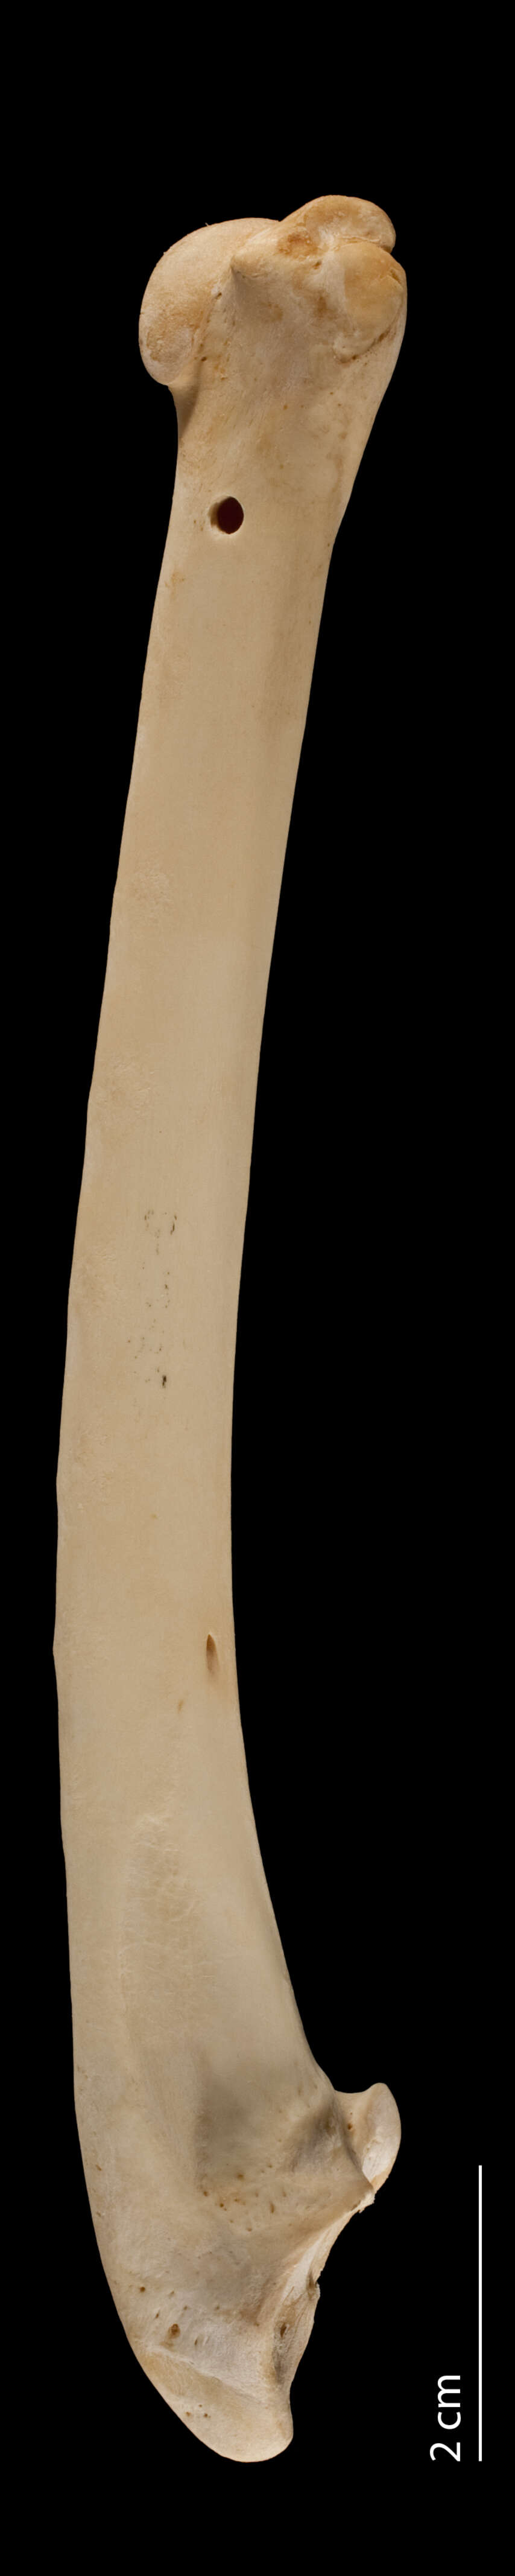 Image of Meleagris gallopavo silvestris Vieillot 1817